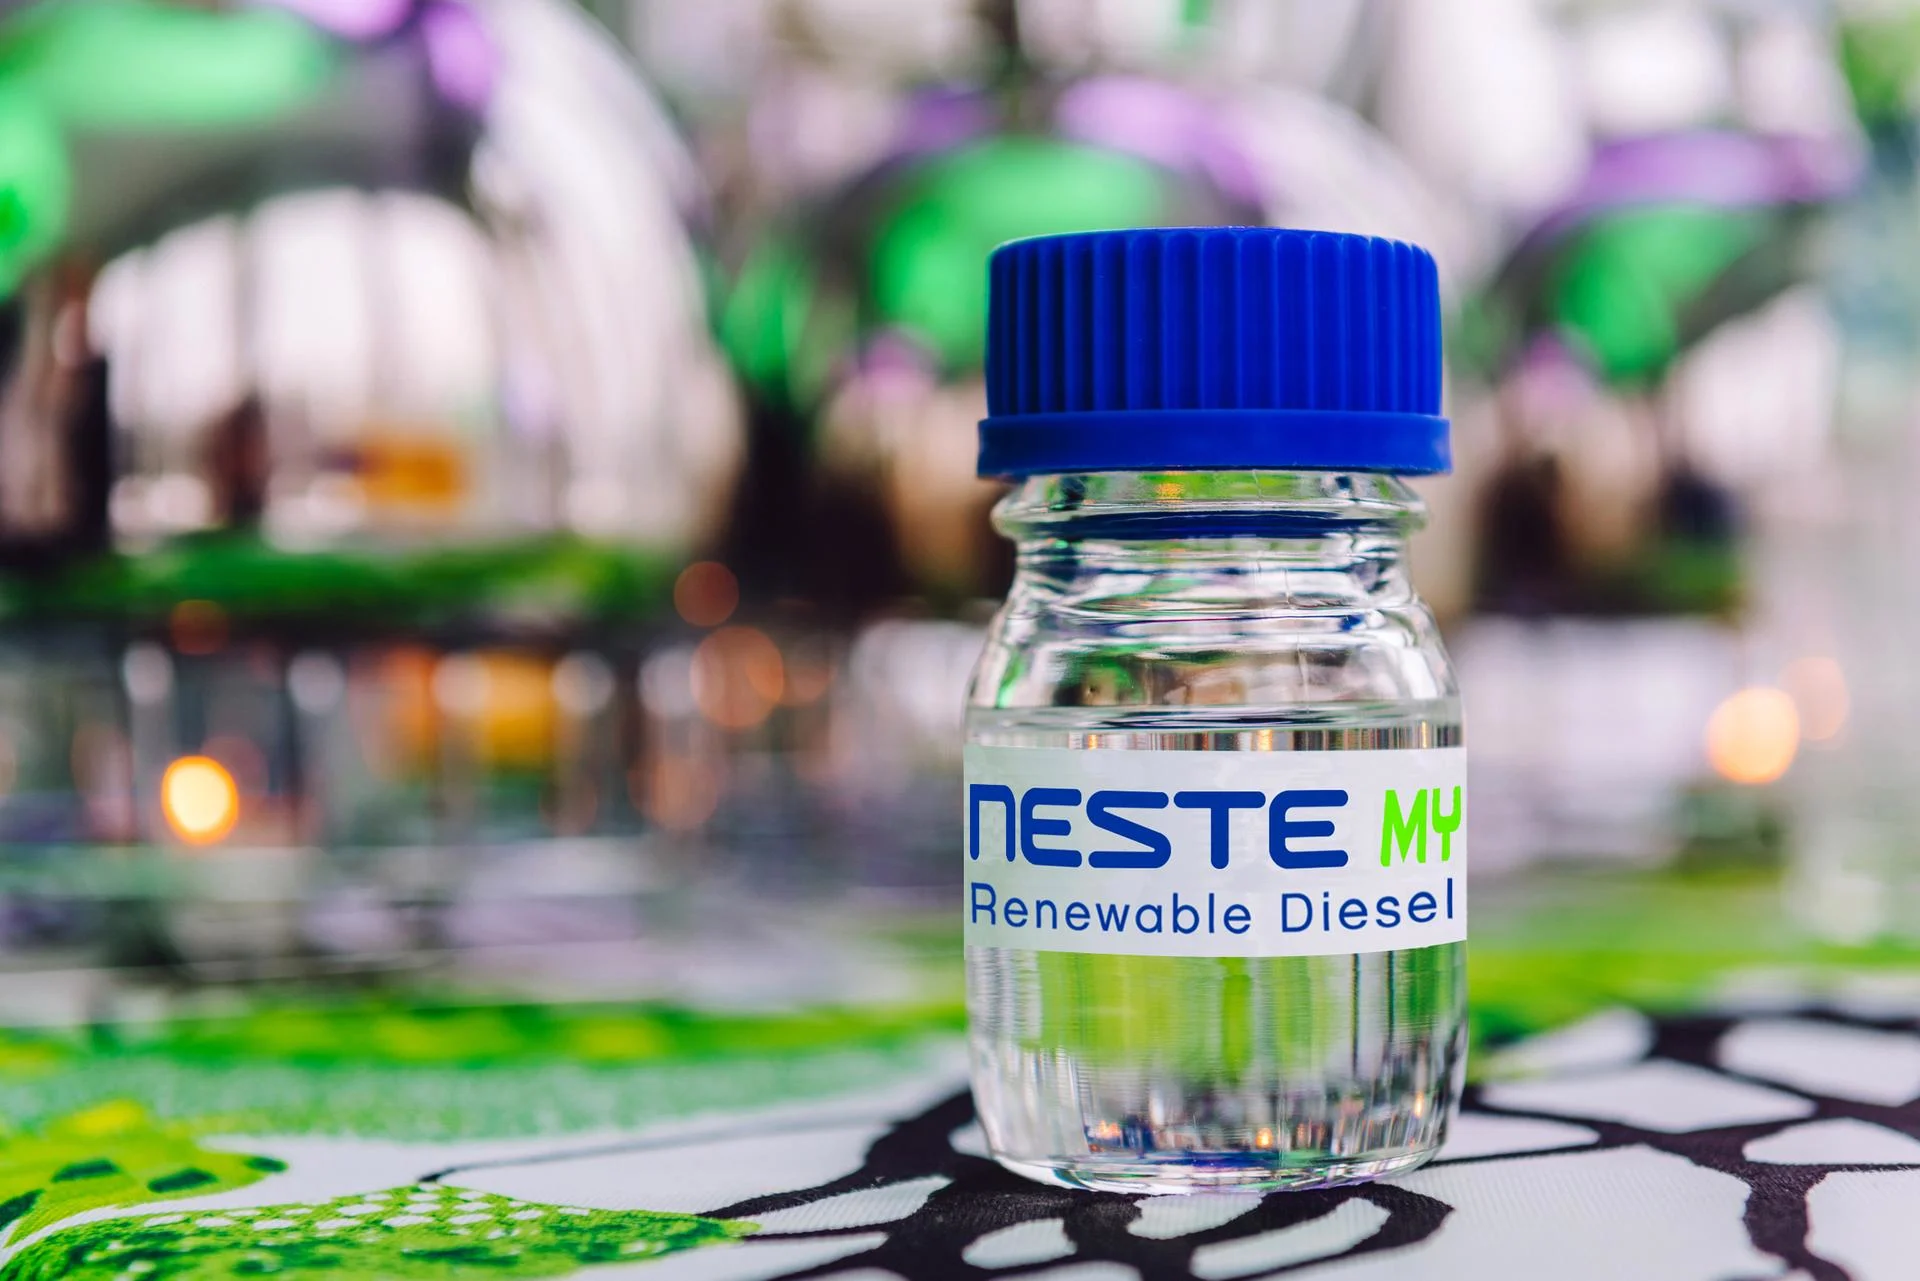 A bottle of Neste MY Renewable Diesel 